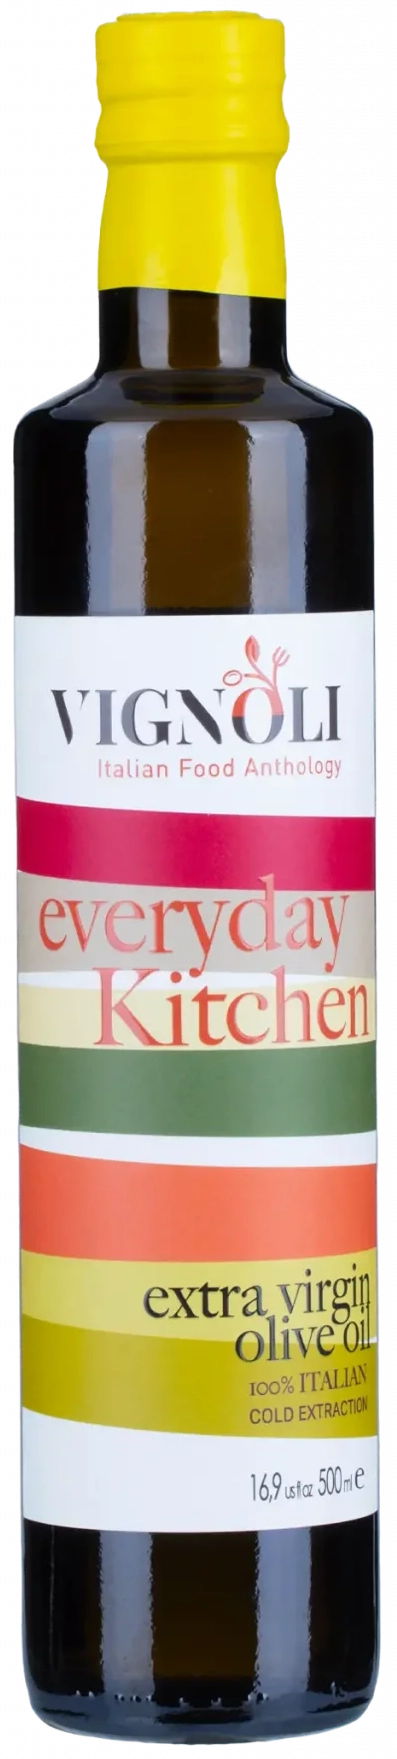 Vignoli Italian Food Anthology